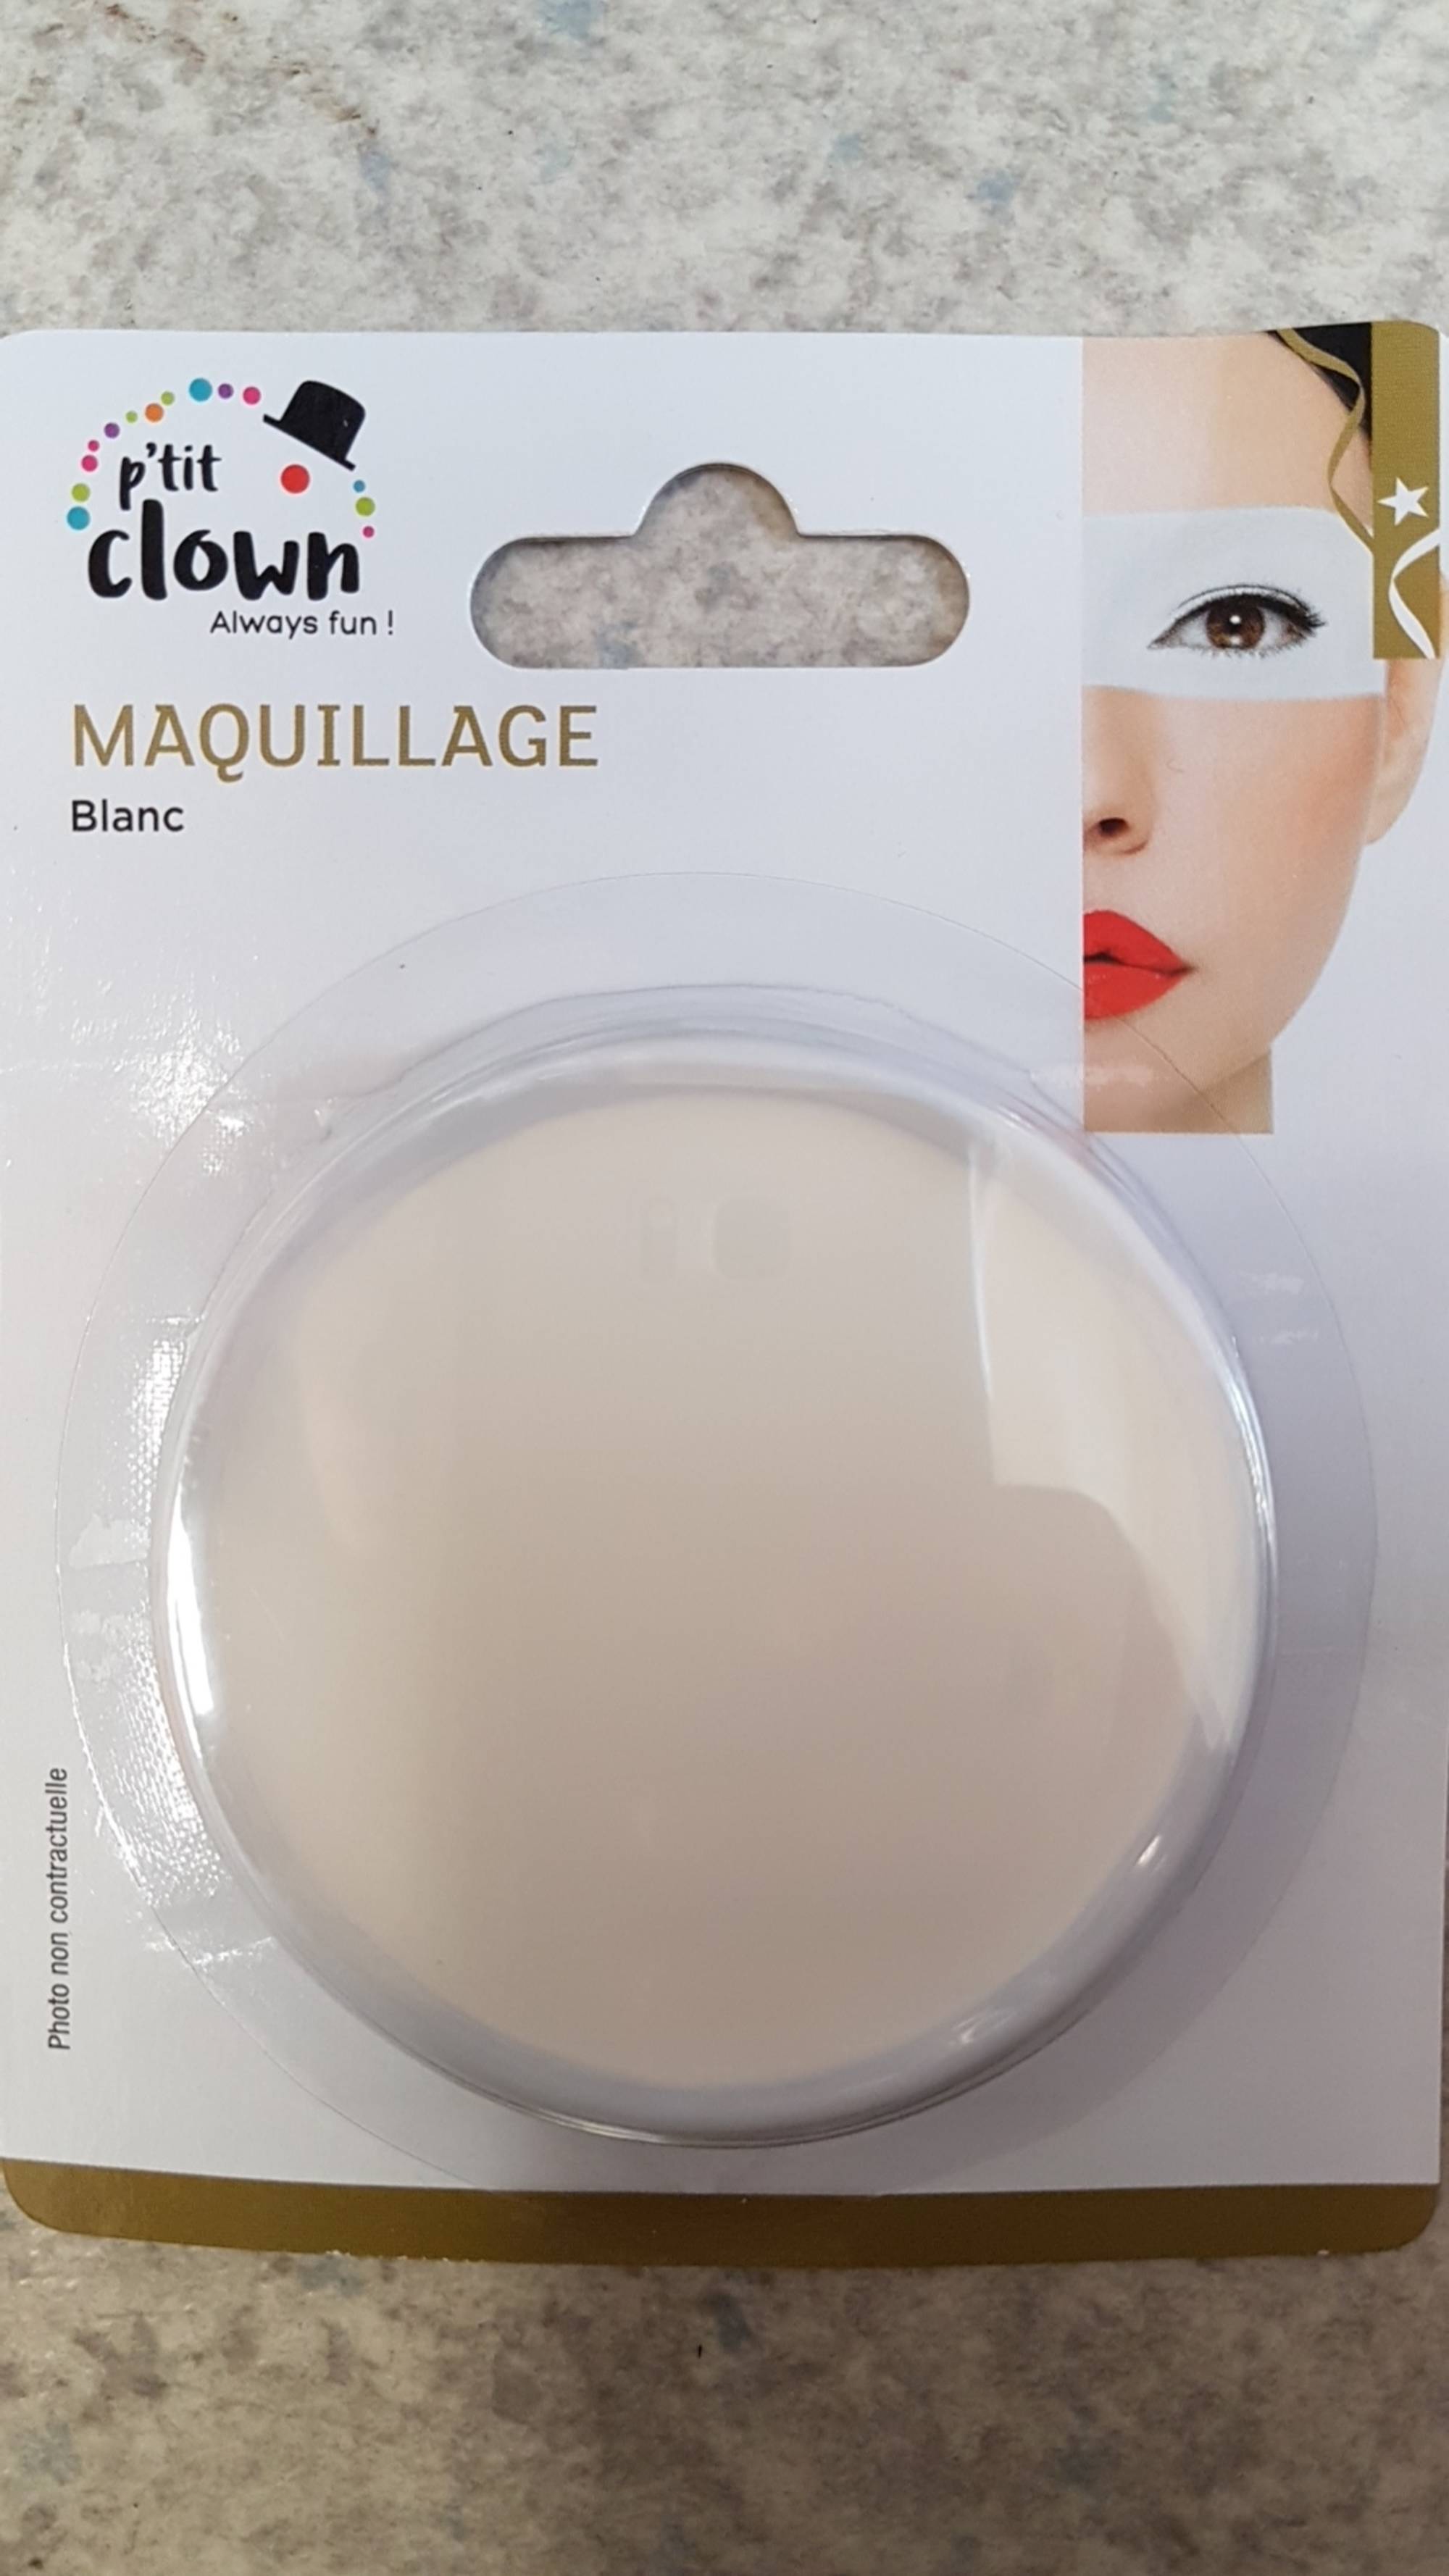 PTIT CLOWN - Always fun! - Maquillage blanc